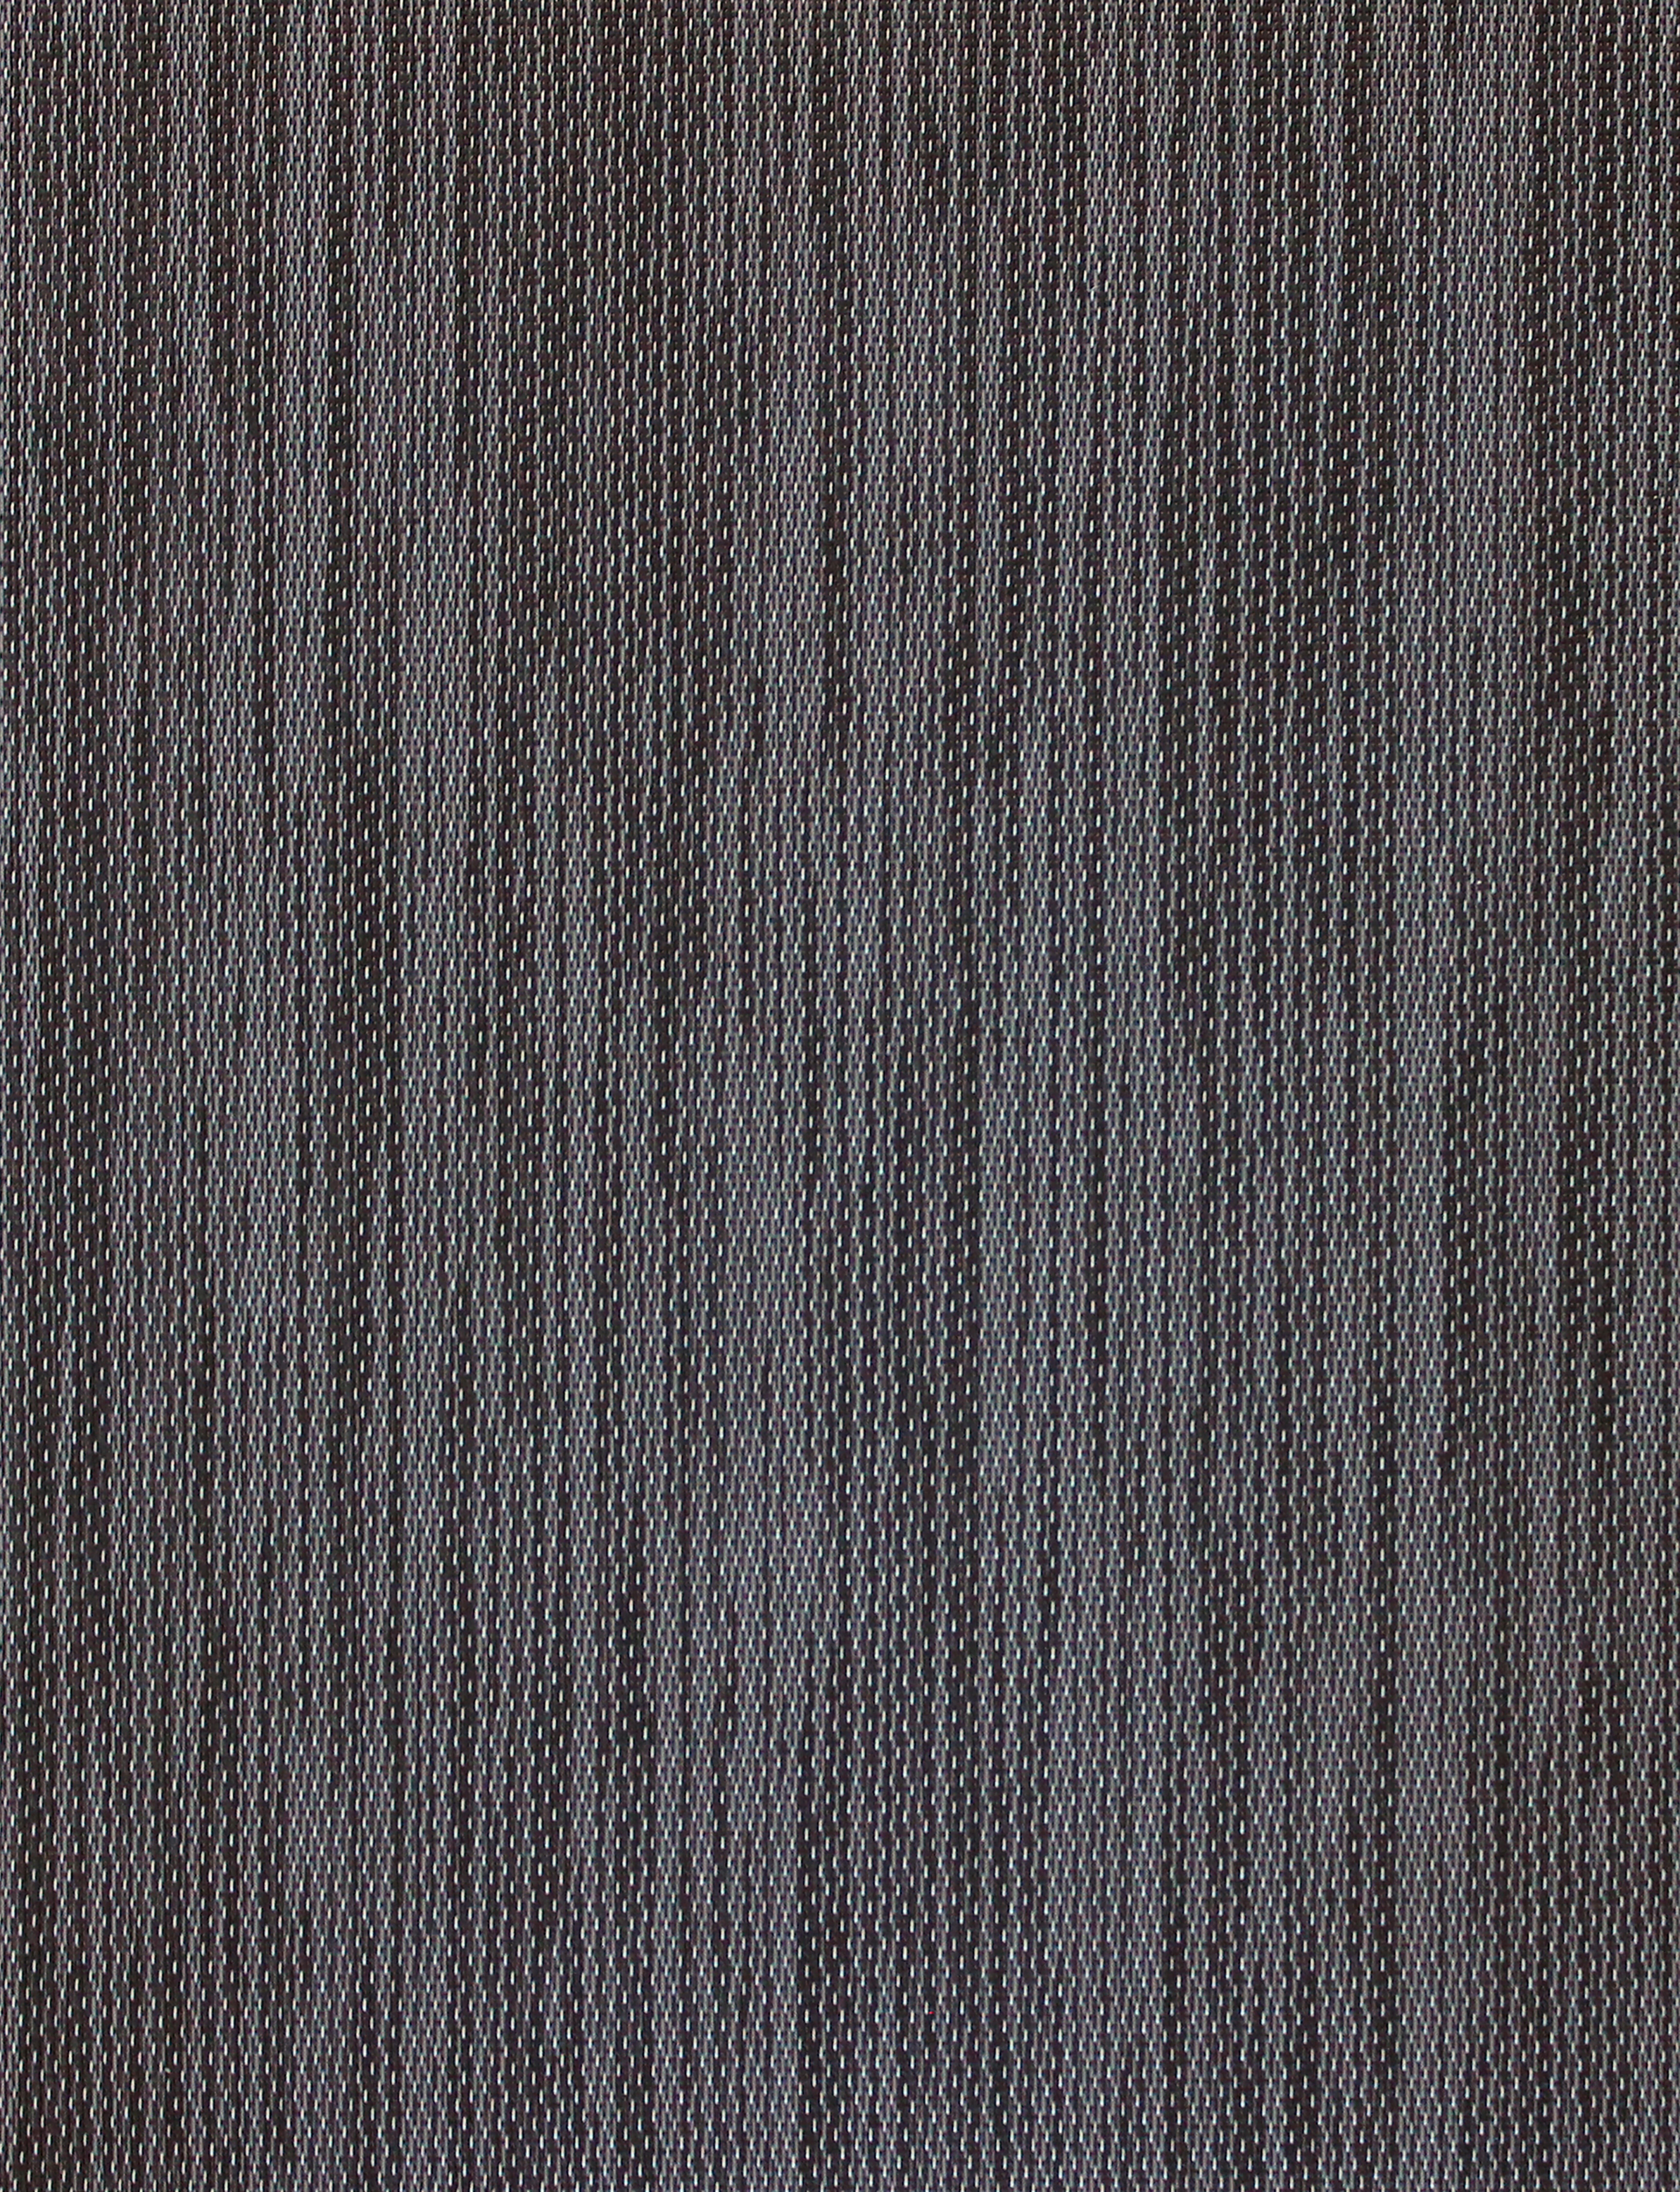 Alfombra exterior/interior pvc teplon plus archi negro / gris 140x200cm